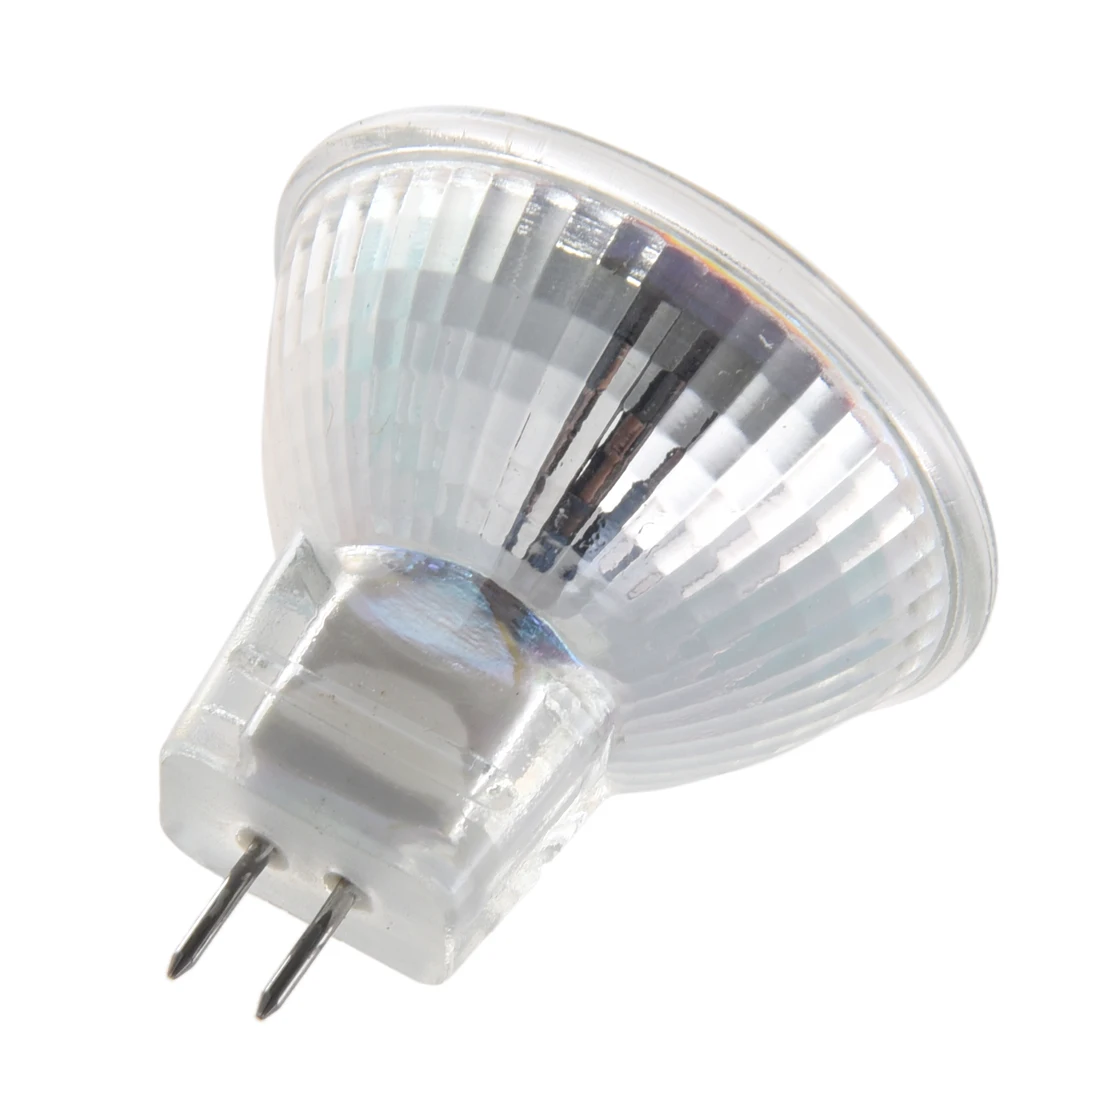 10 шт. MR11 GU4 теплый белый 3528 SMD 24 светодиодный домашний Точечный светильник лампа 1 Вт светодиодные лампы 12V